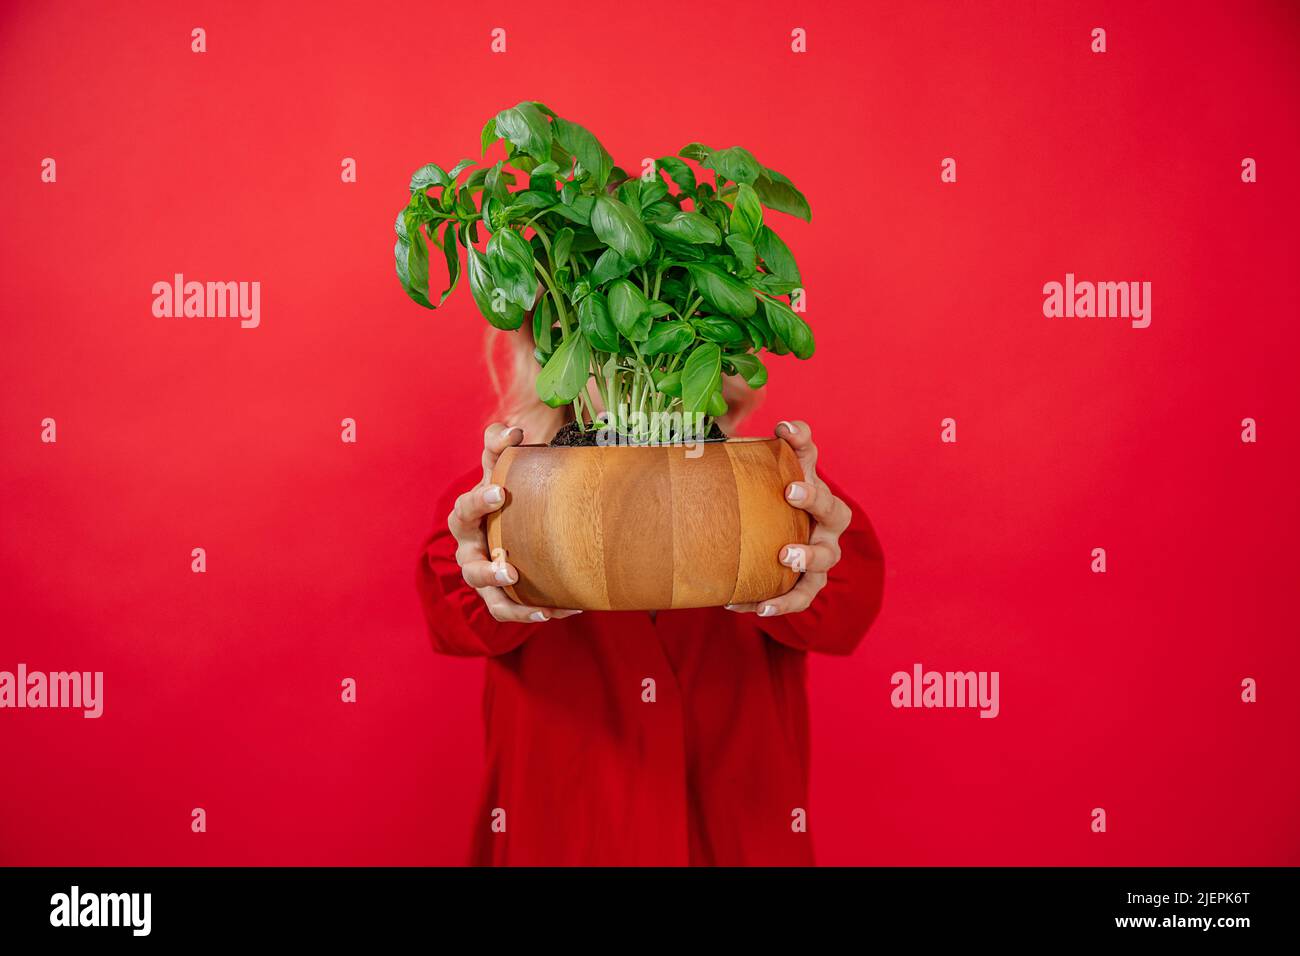 Femme méconnaissable qui hoche la plante de basilic dans une marmite en bois sur fond rouge, sourire souriant, regardant l'appareil photo Banque D'Images